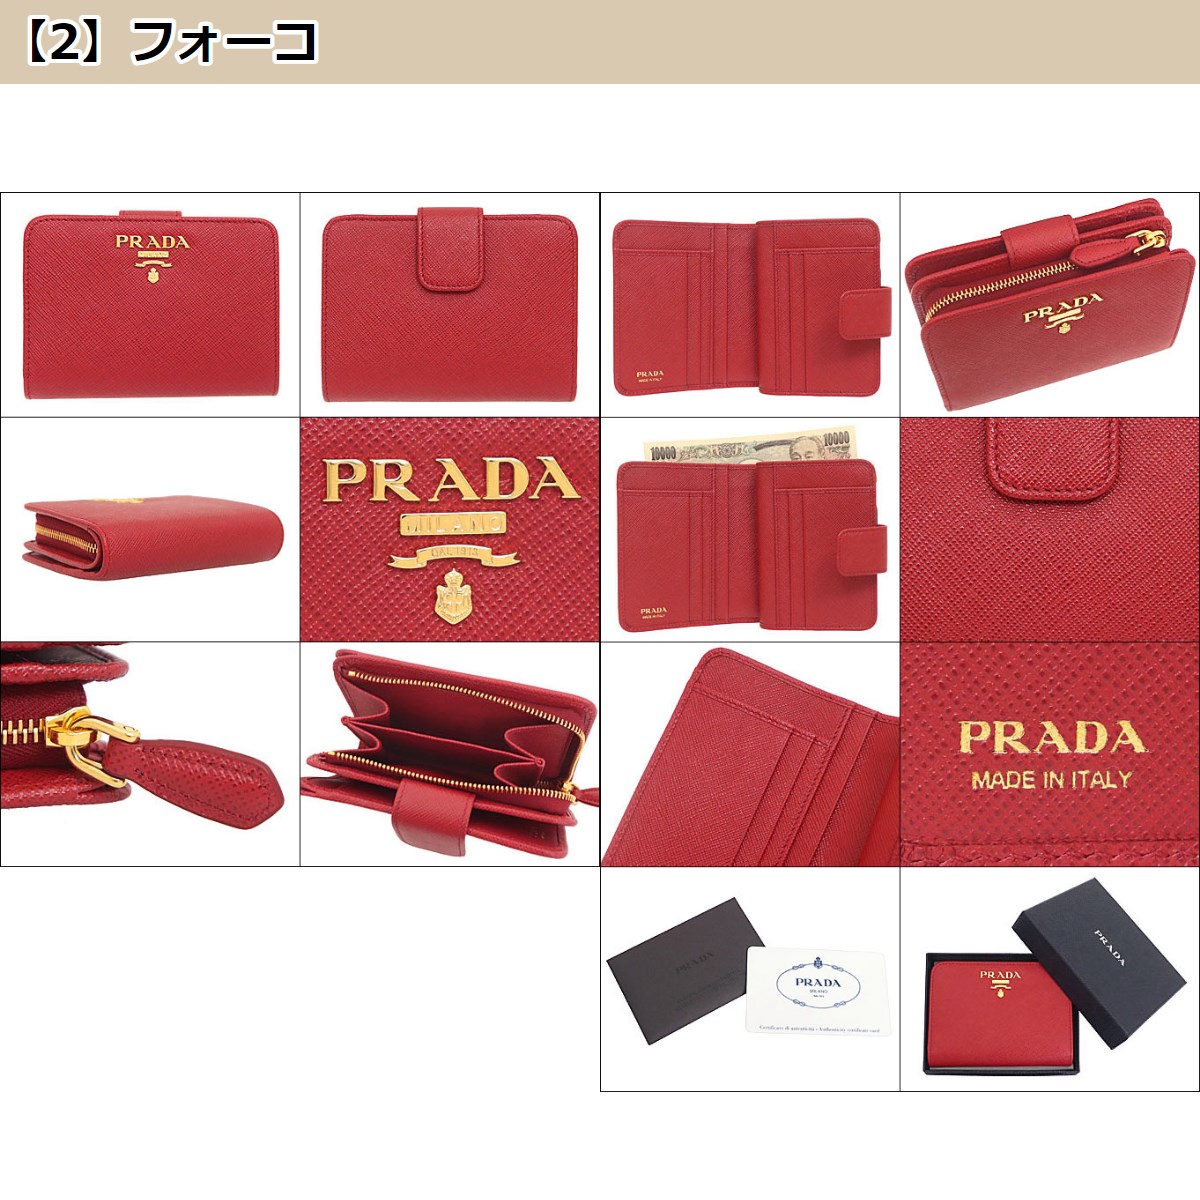 プラダ PRADA 財布 二つ折り財布 1ML018 QWA サフィアーノ レザー メタル レタリング ロゴ バイフォールド ウォレット レディース